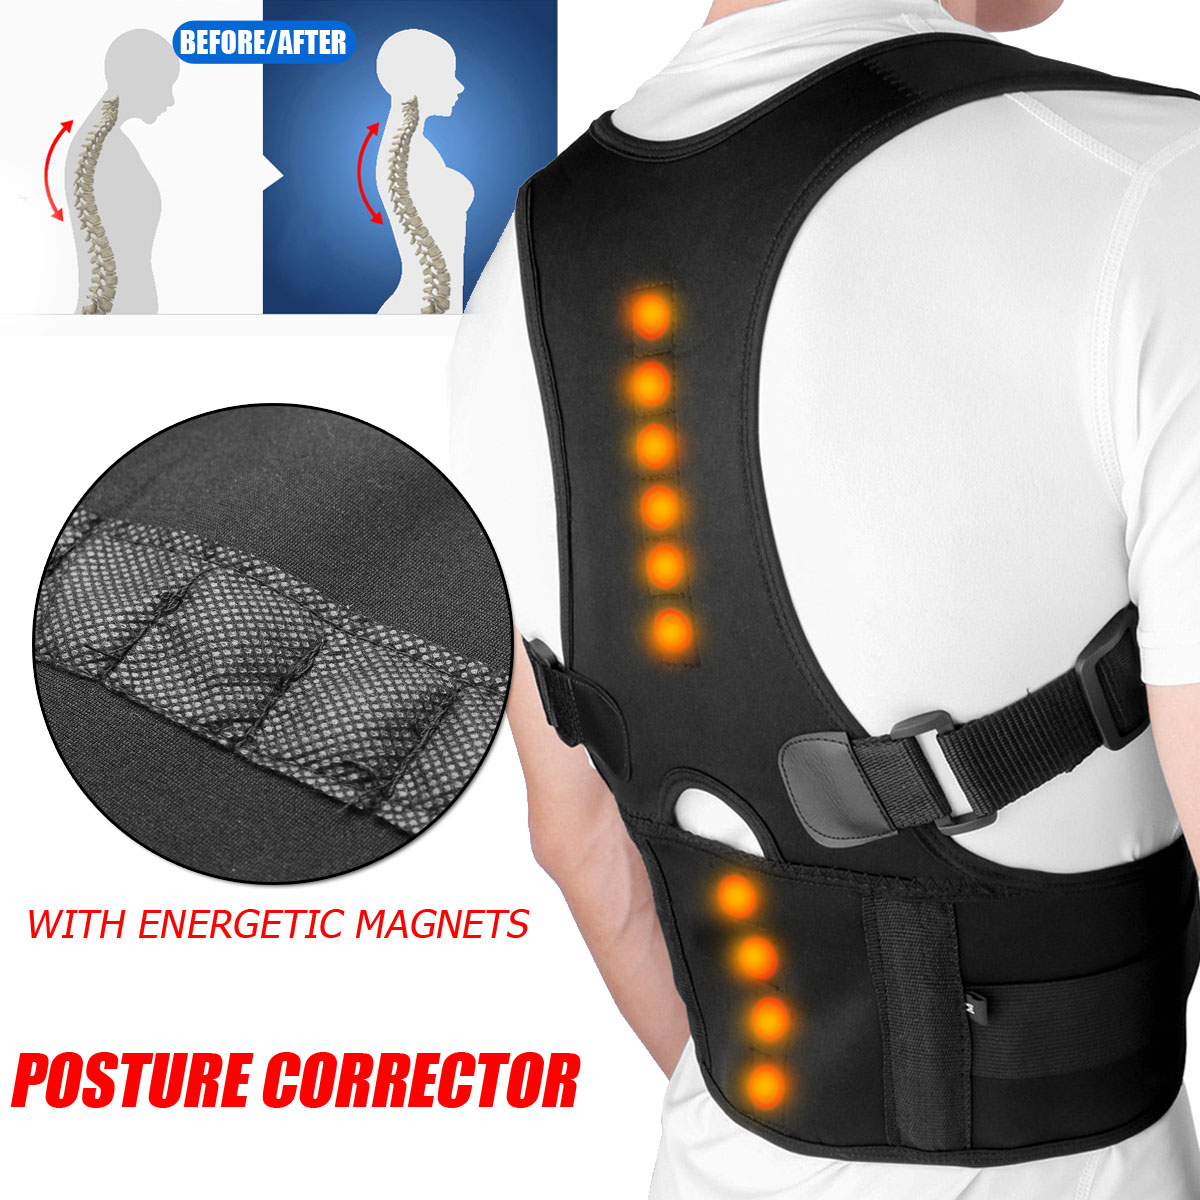 Men-Women-Sitting-Posture-Corrector-Adjustable-Magnetic-Back-Brace-Shoulder-Corrector-1409317-1